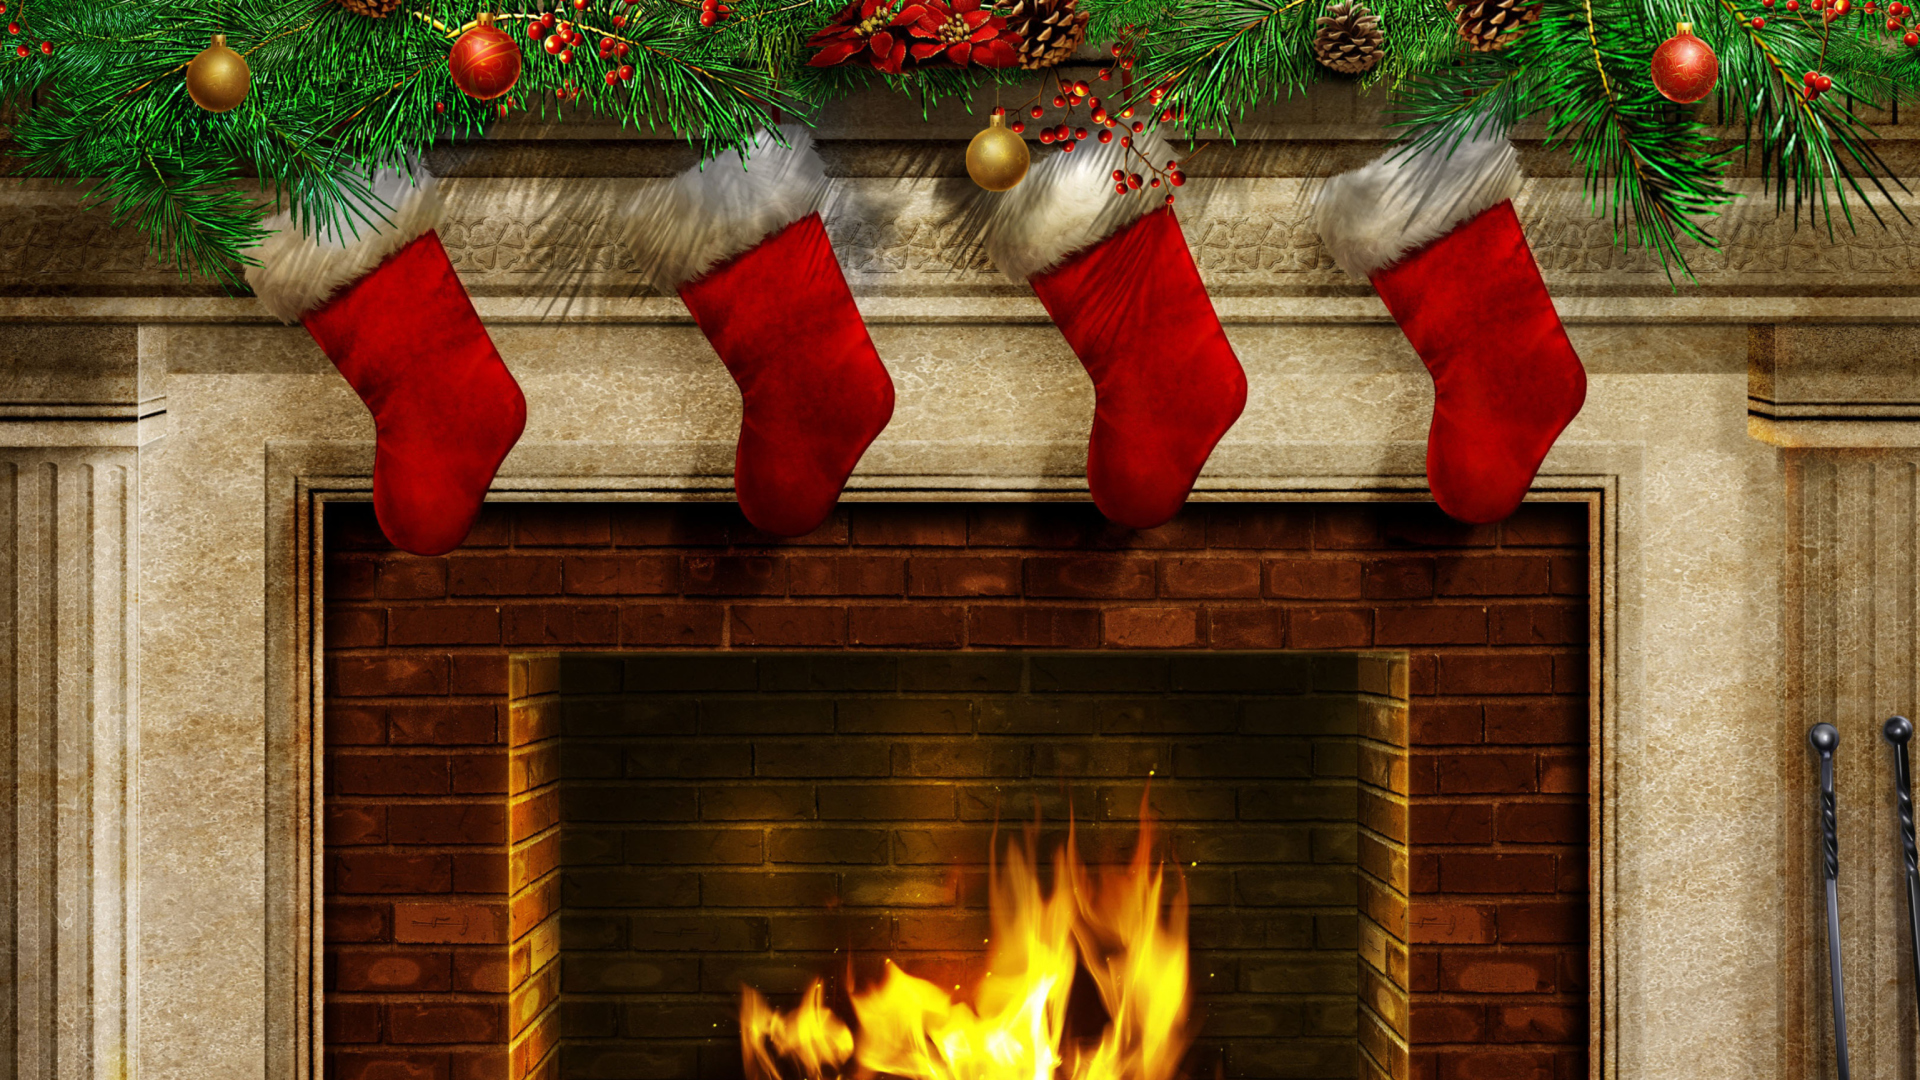 Fireplace And Christmas Socks wallpaper 1920x1080